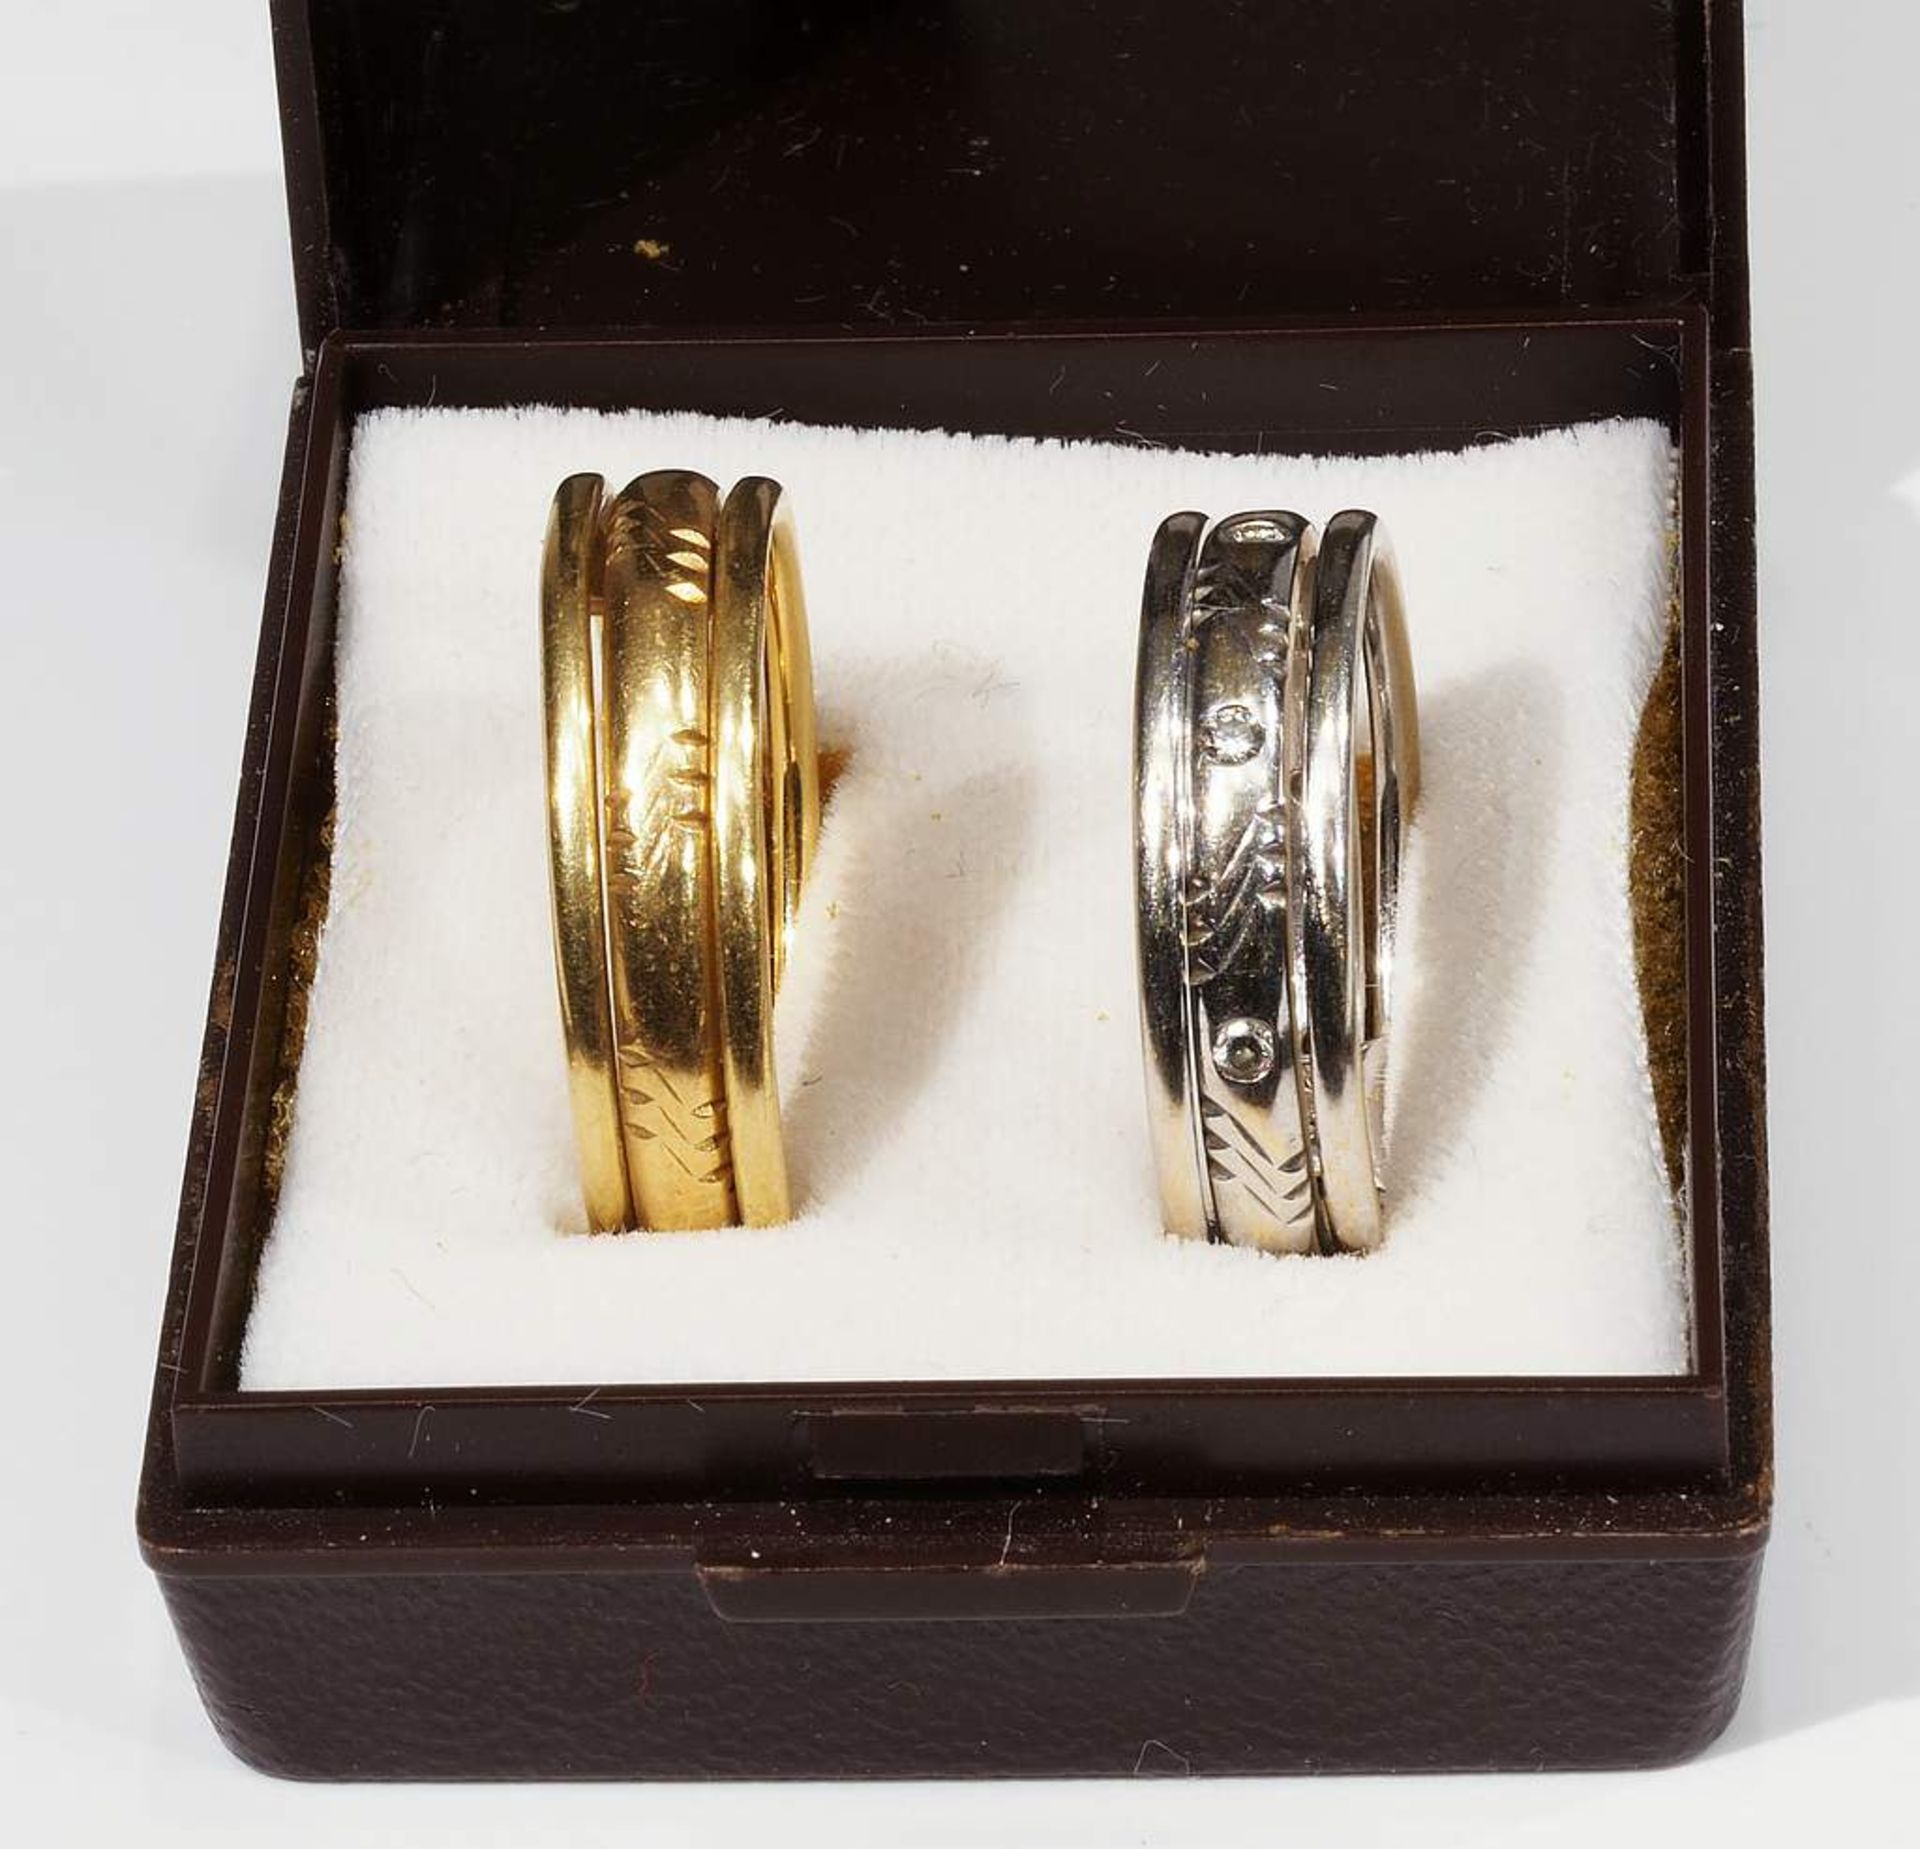 Paar Ringe. Gelb- und Weißgold. 750er Gold mit Innengravur, besetzt mit kleinen Diamanten. - Image 7 of 7